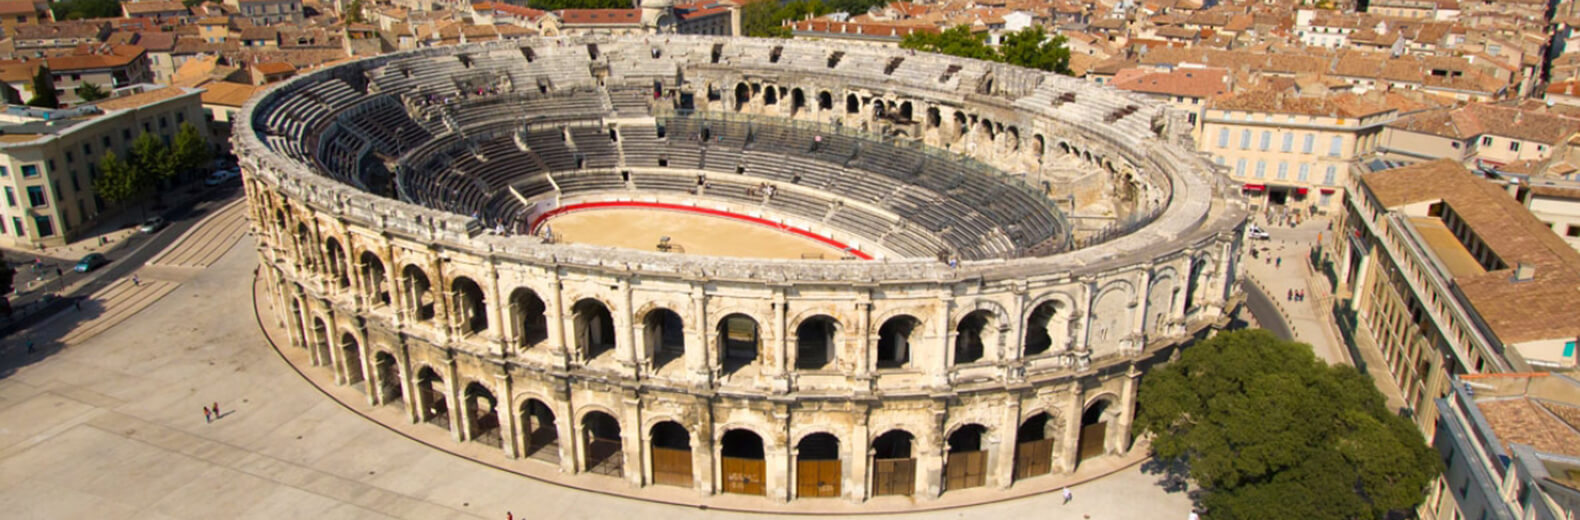 Las arenas de Nîmes